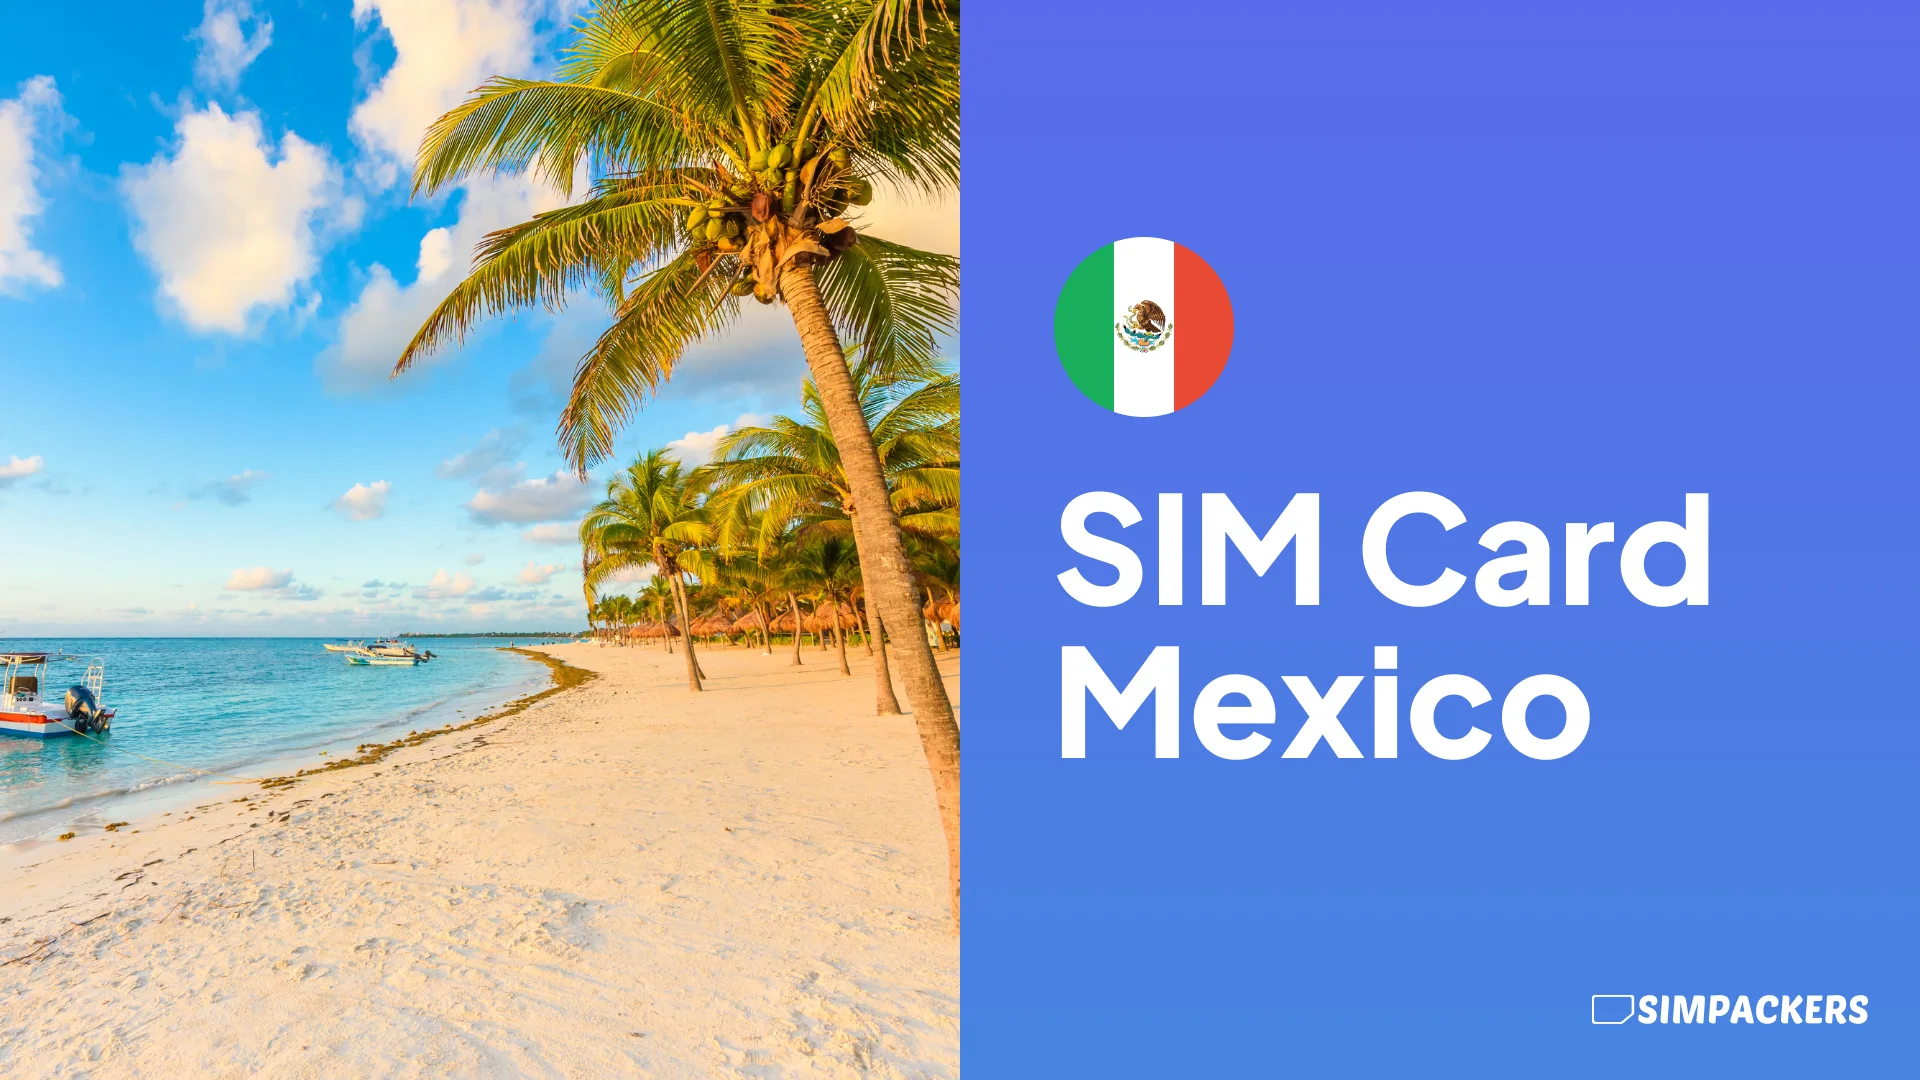 EN/FEATURED_IMAGES/sim-card-mexico.webp